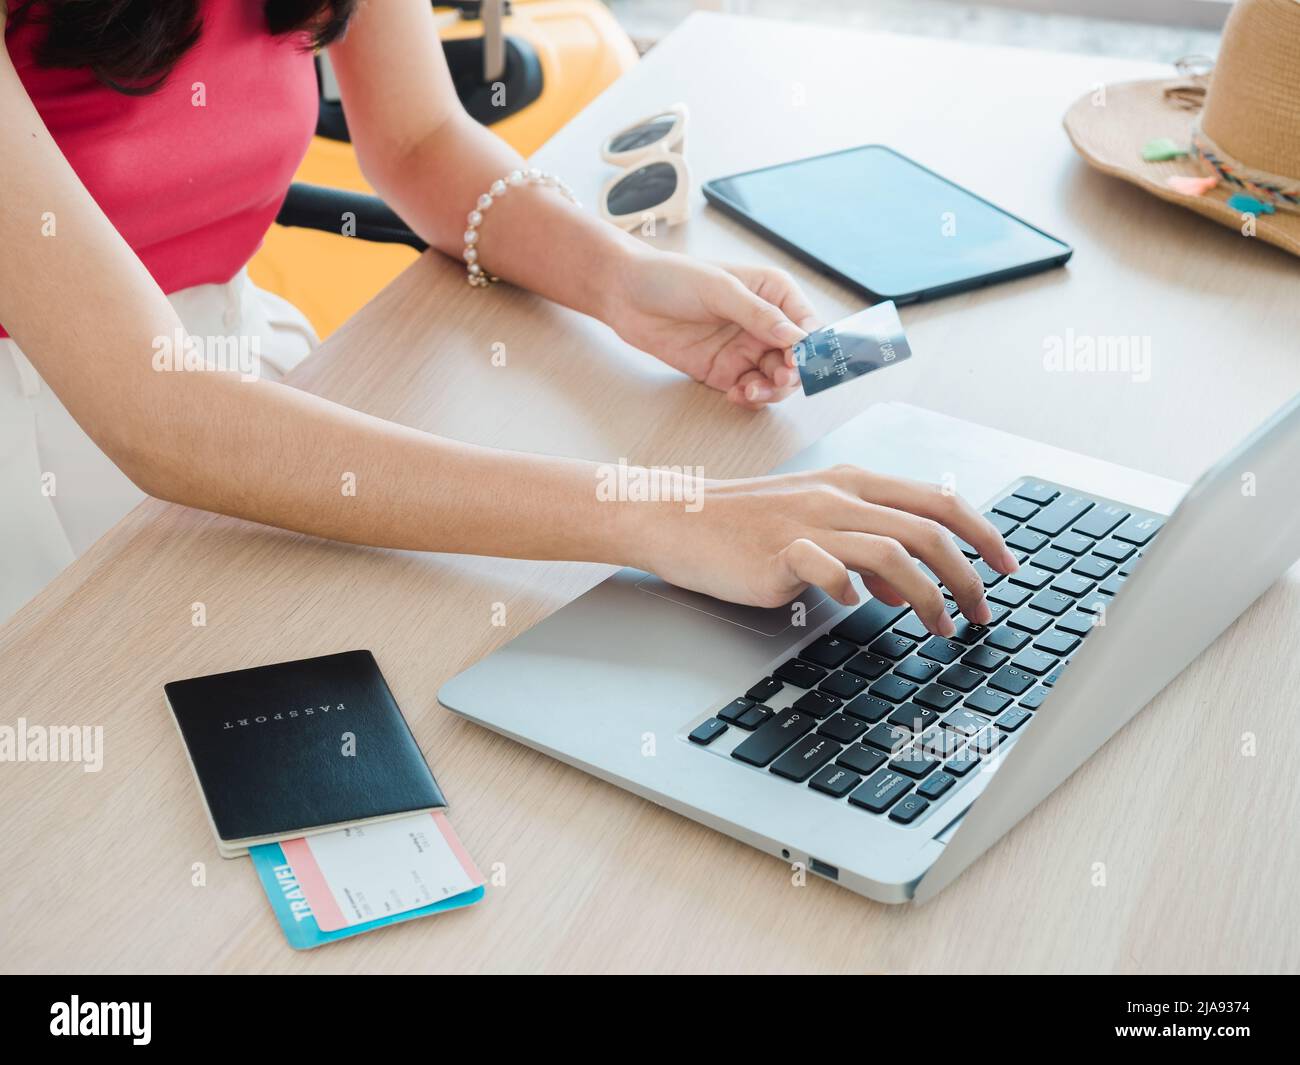 Die Hand der jungen Frau hält Kreditkarte und Reisepass, während sie den Laptop für die Flugbuchung benutzt, das Hotelzimmer für die Sommerreise auf dem Tisch, bereit für die Reise Stockfoto